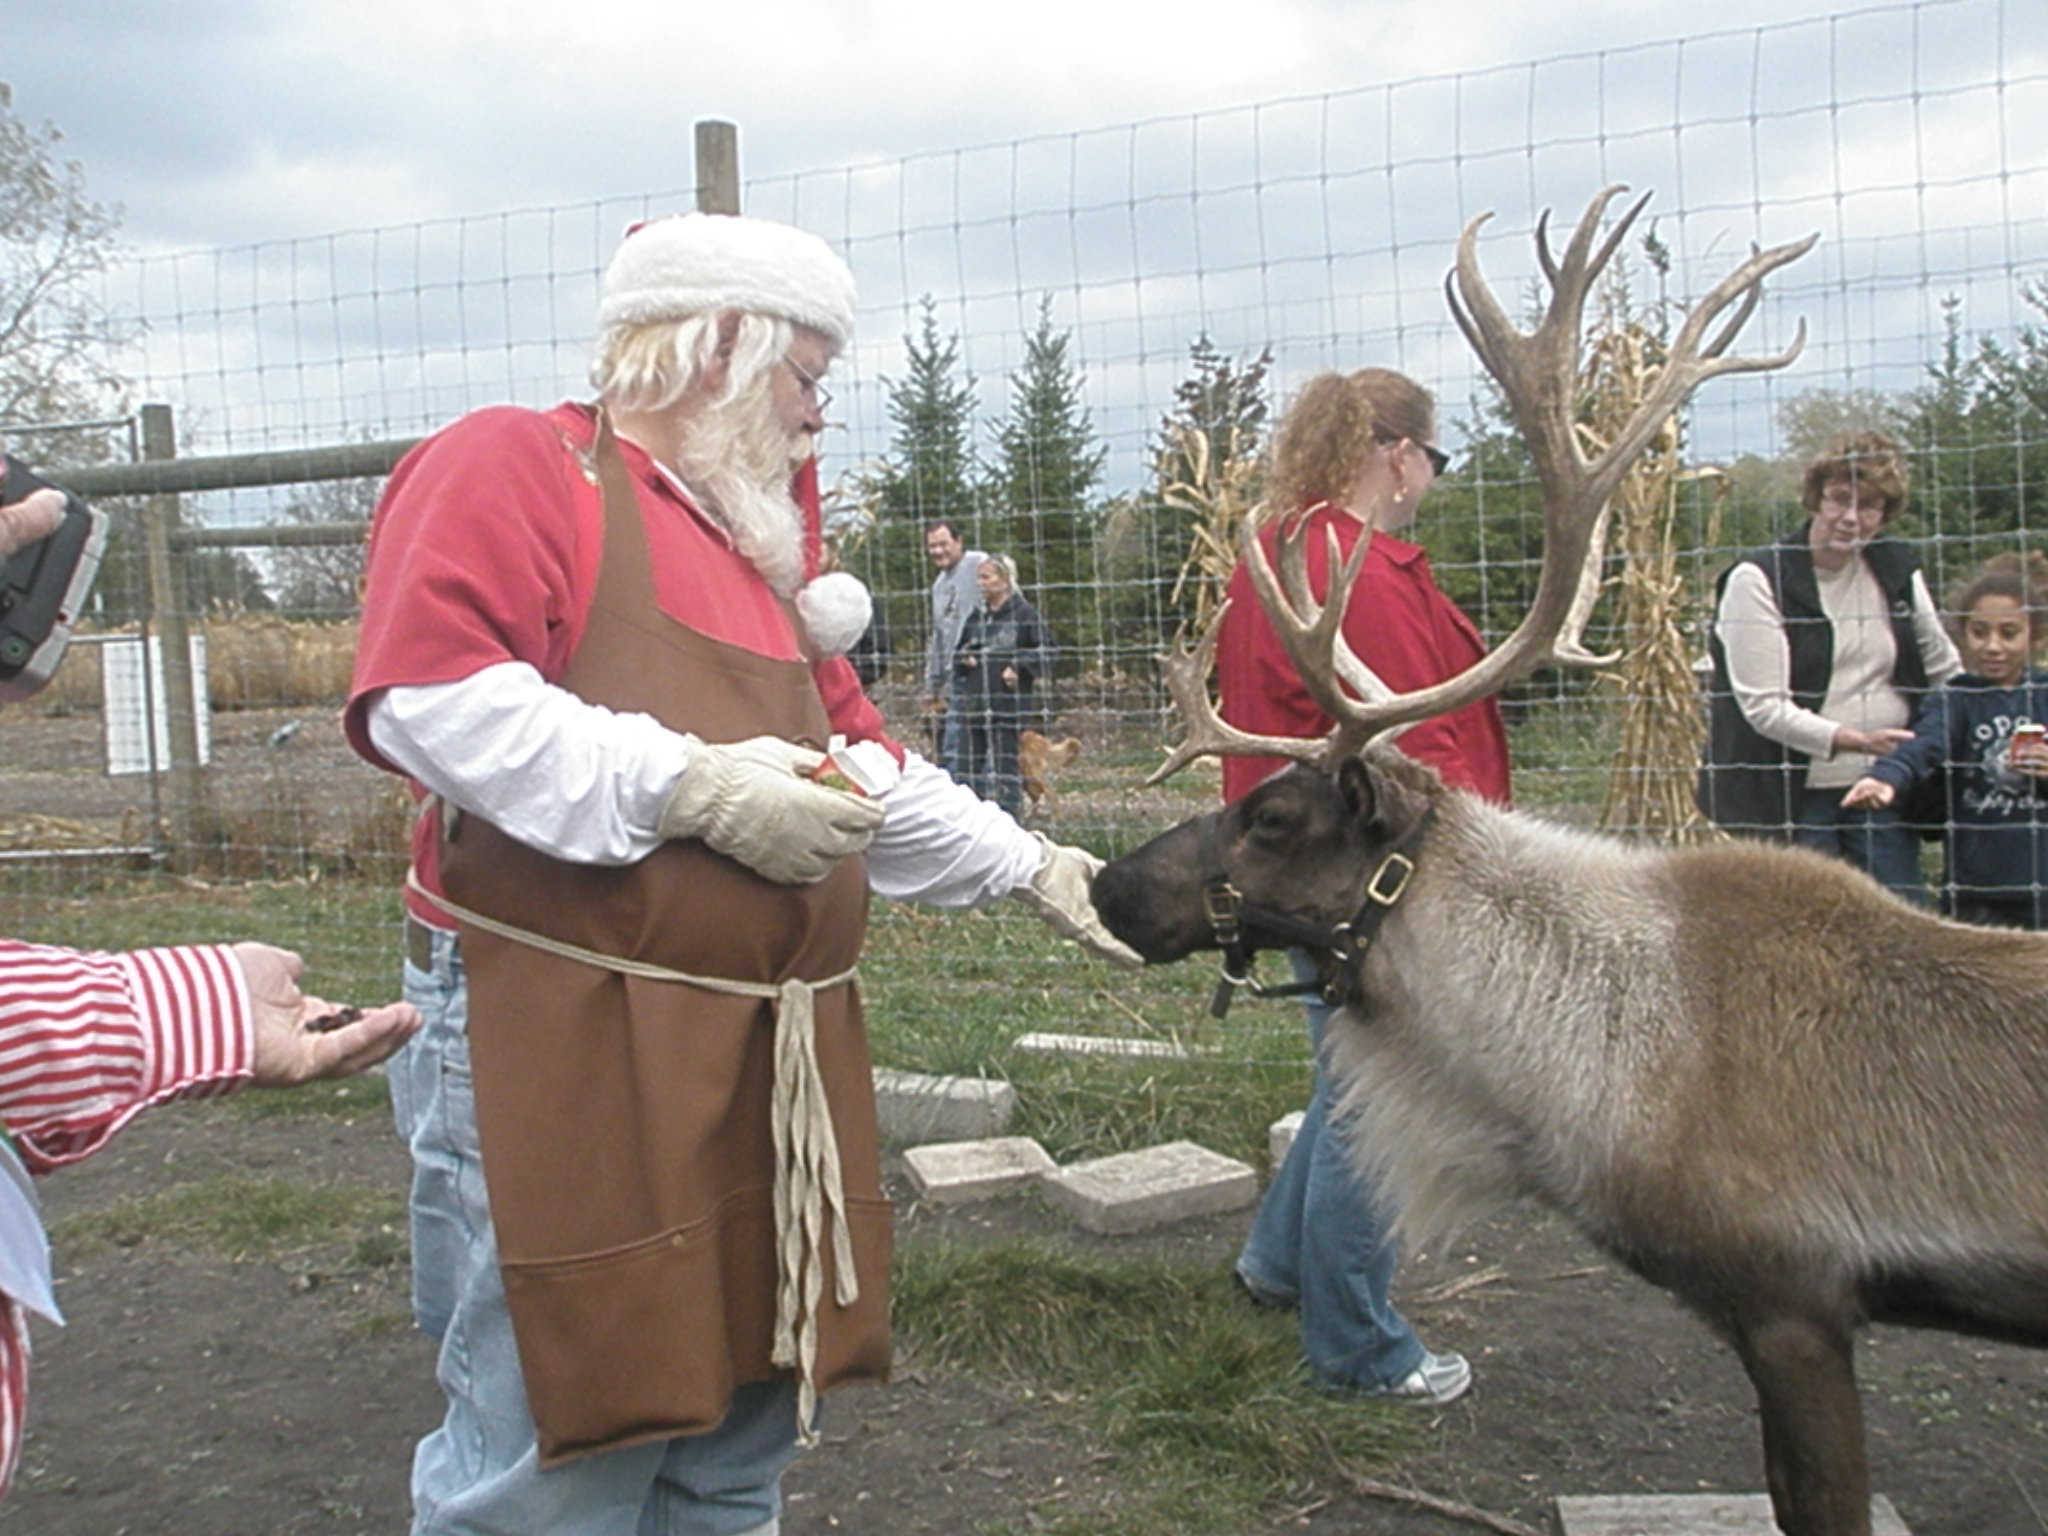 Feeding reindeer